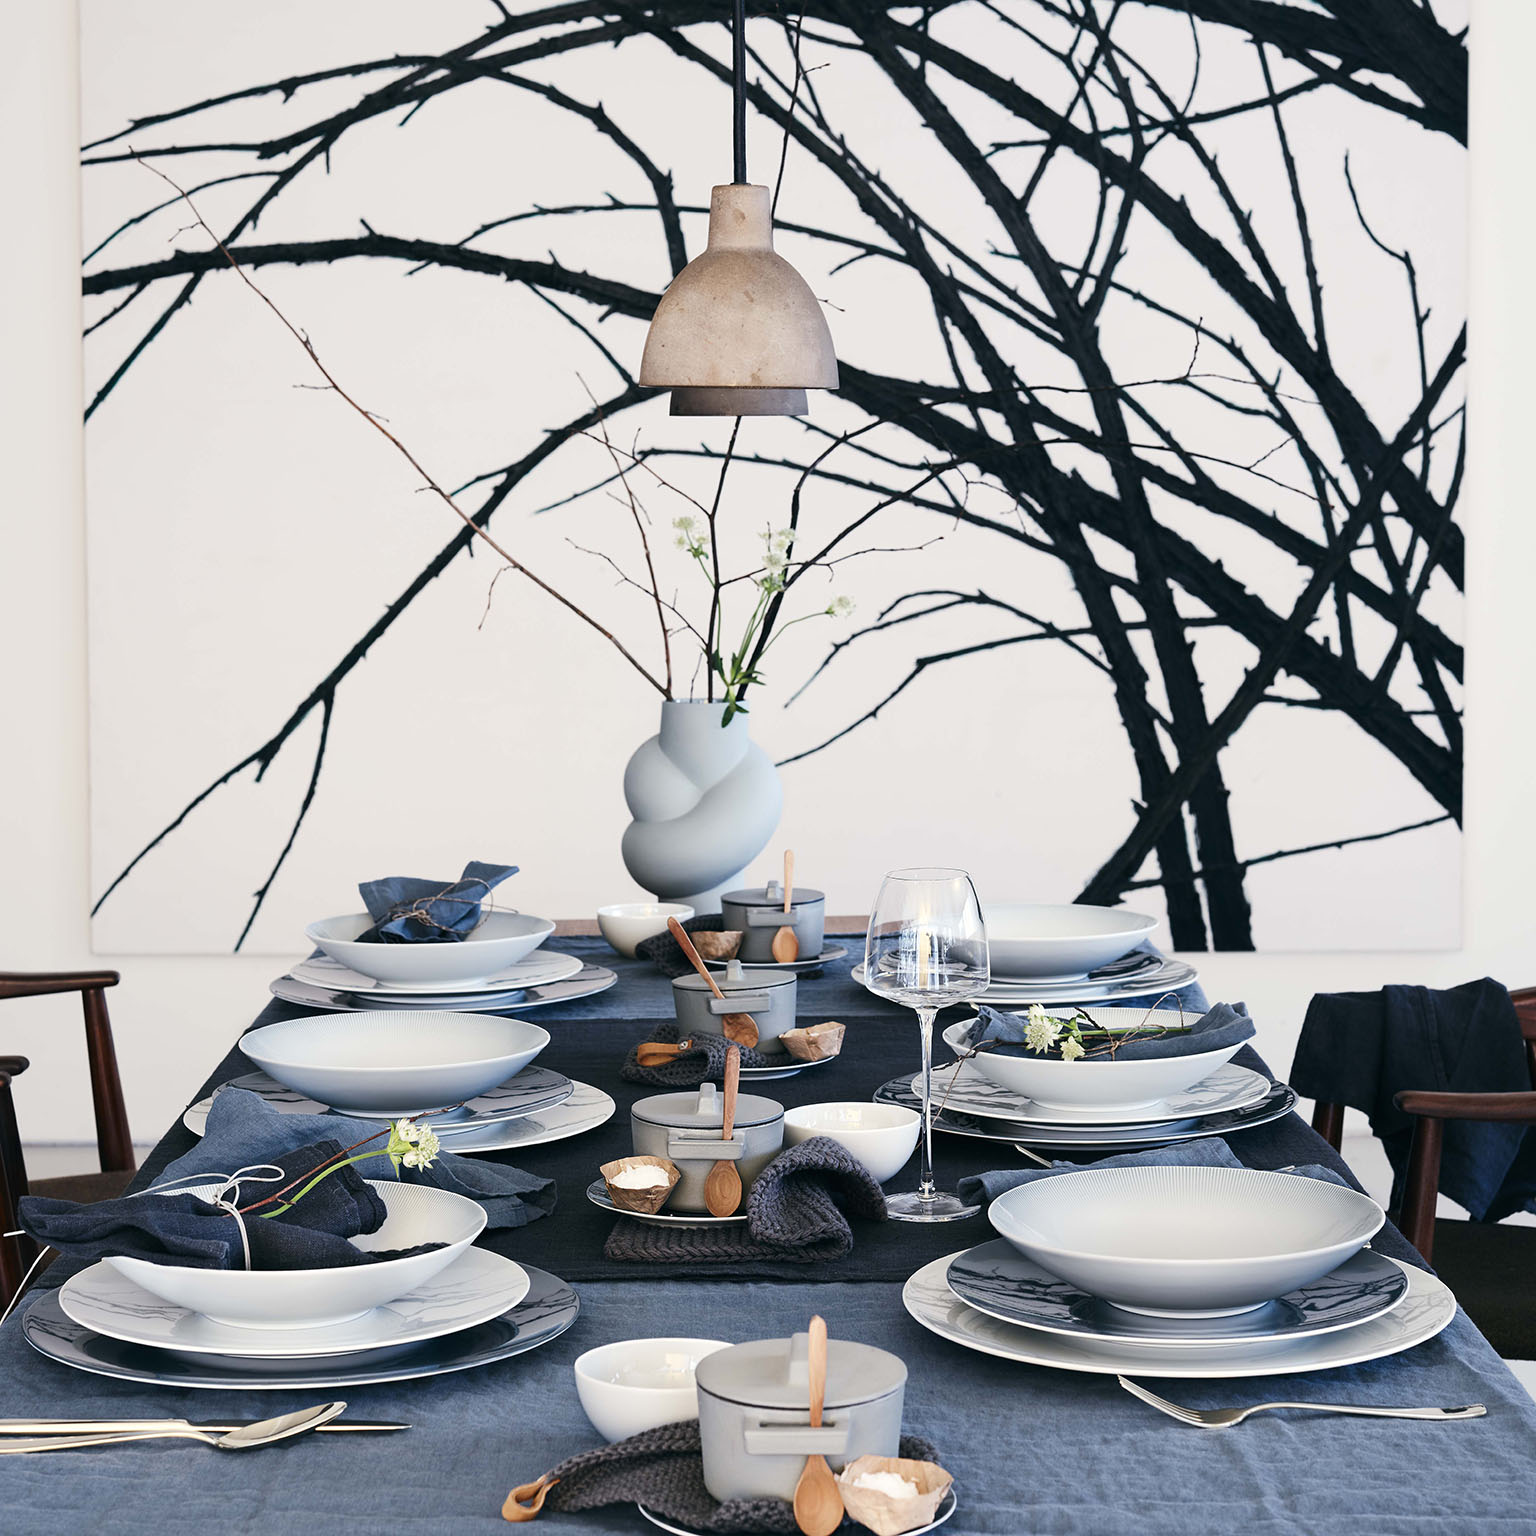 Vue latérale d'une table entièrement dressée pour six personnes avec des assiettes à soupe et des assiettes plates TAC Sensual, des serviettes en lin, des accessoires de table, un vase Node et un grand tableau en arrière-plan.